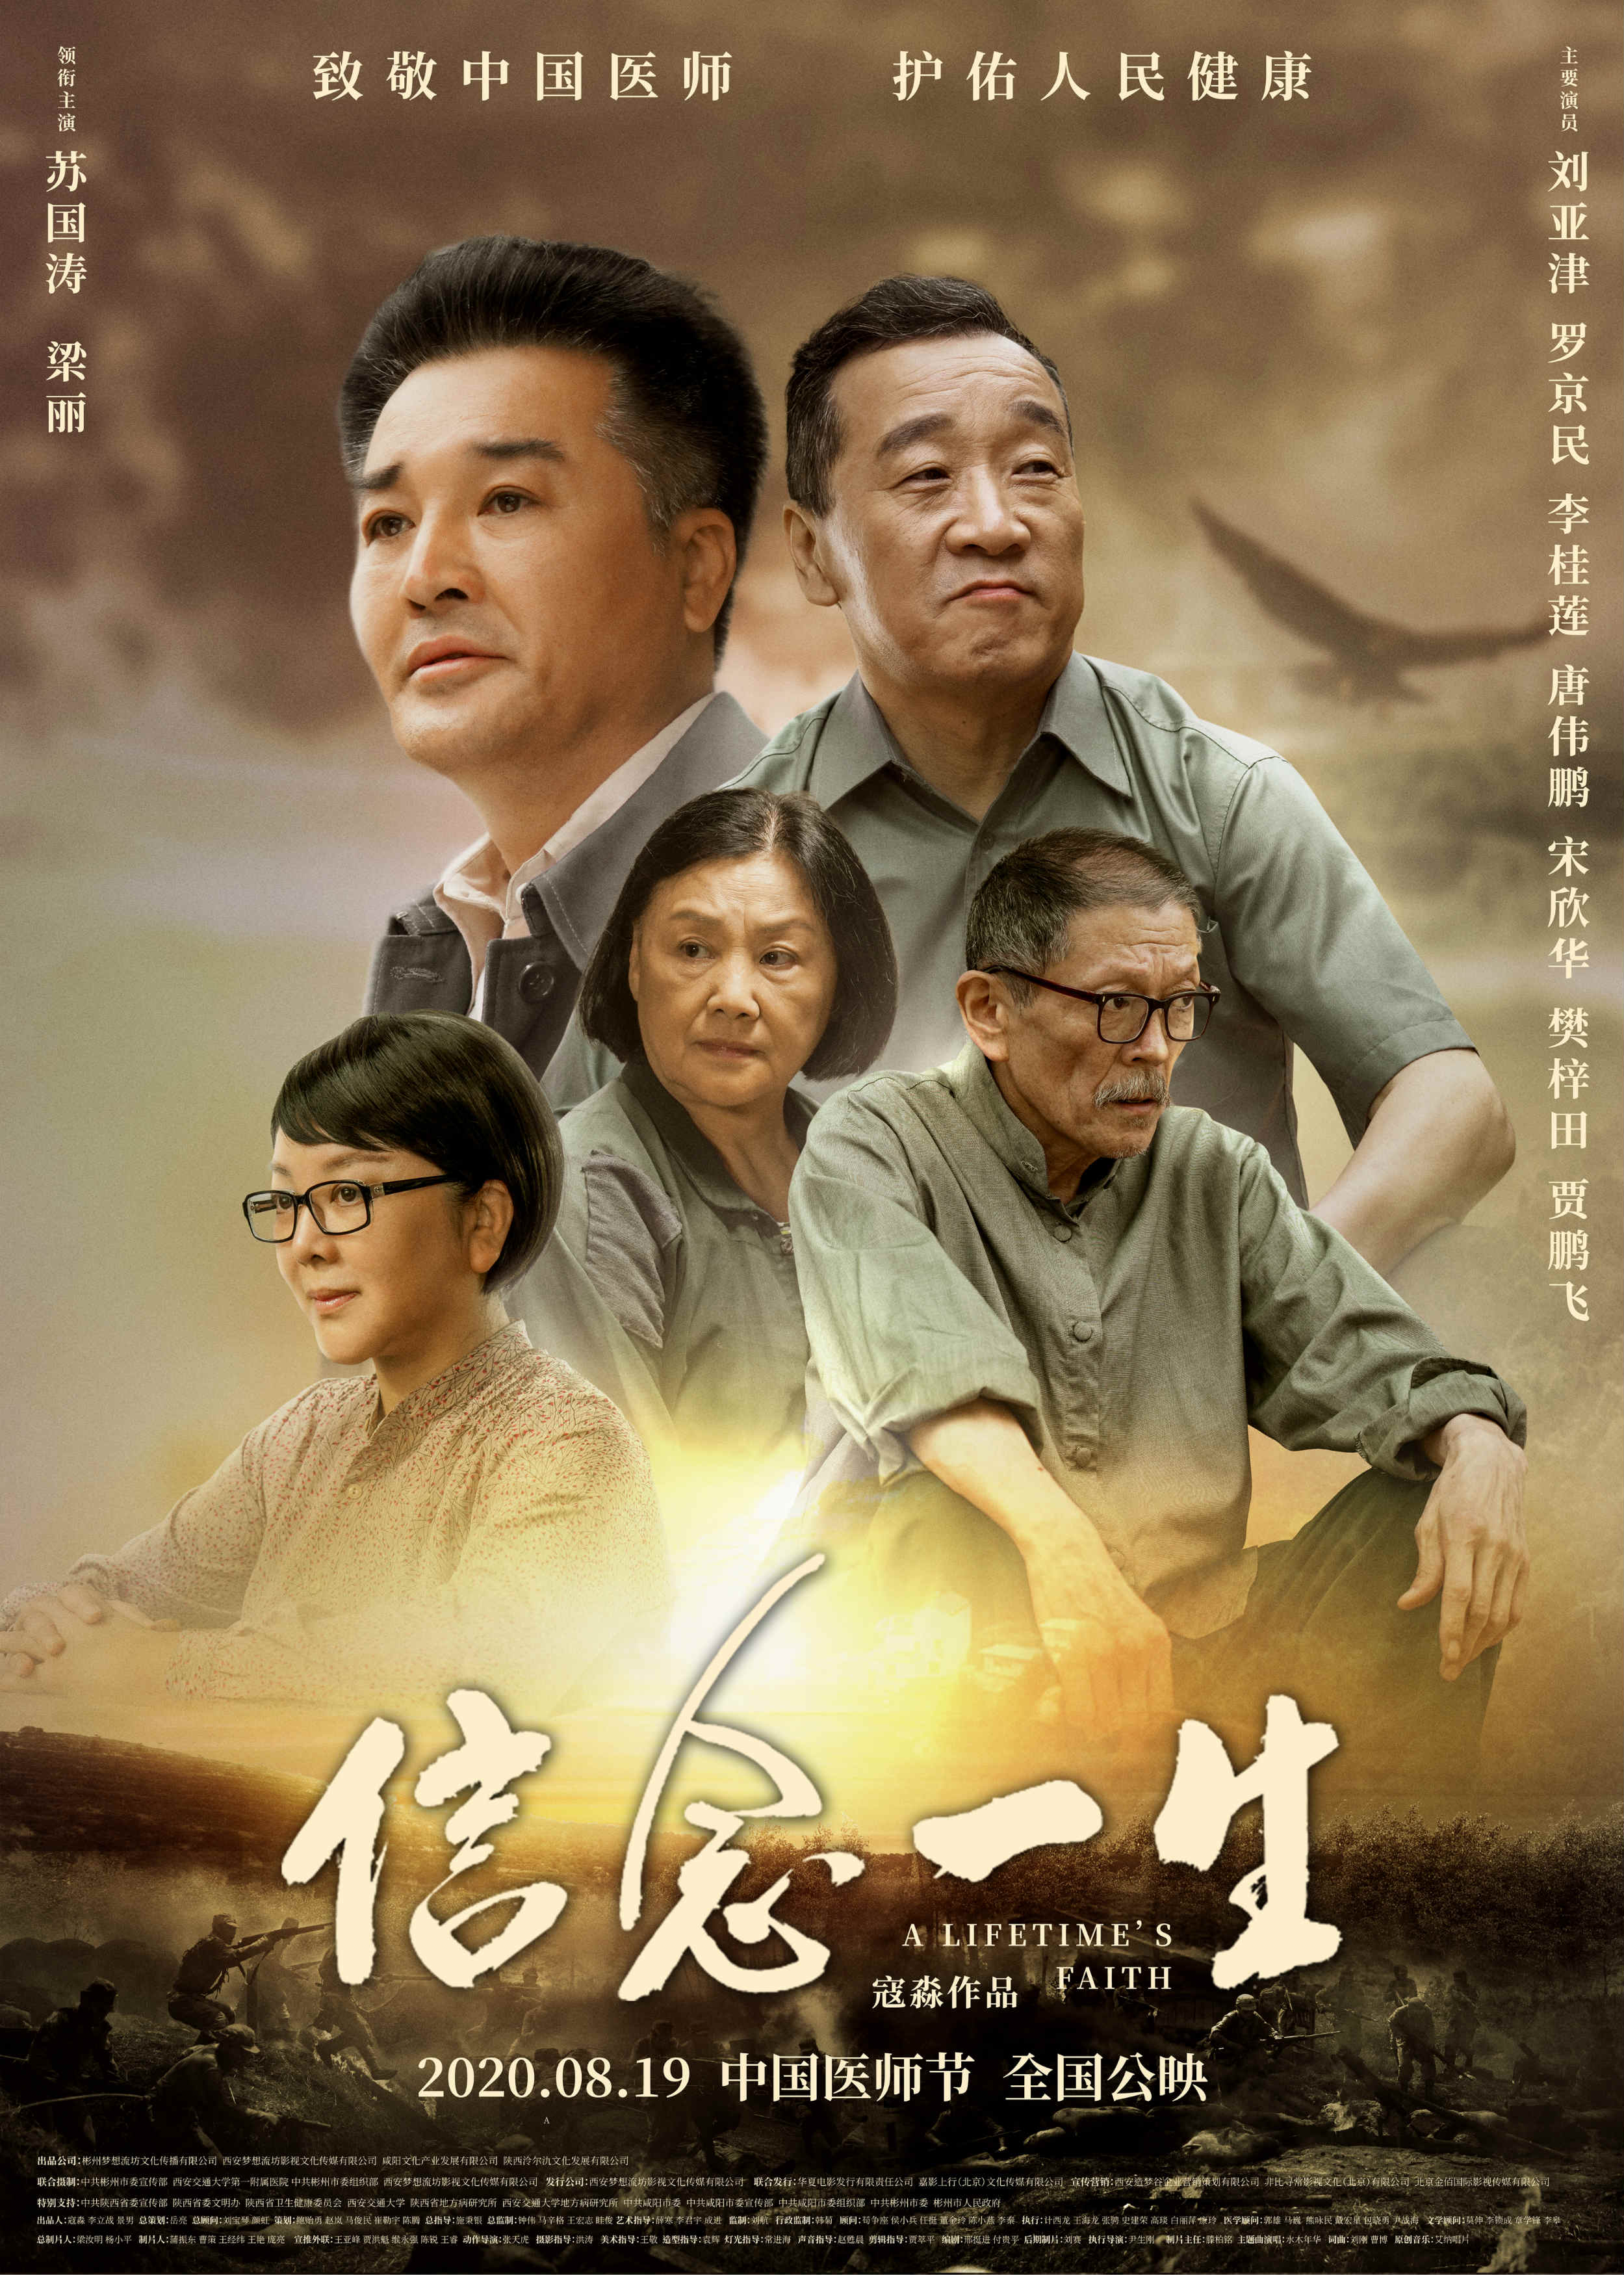 電影《信念一生》發佈終極海報 醫師節公映致敬中國醫師